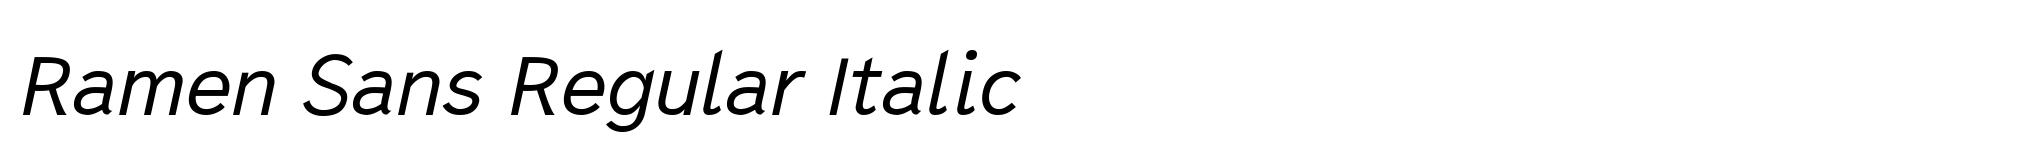 Ramen Sans Regular Italic image